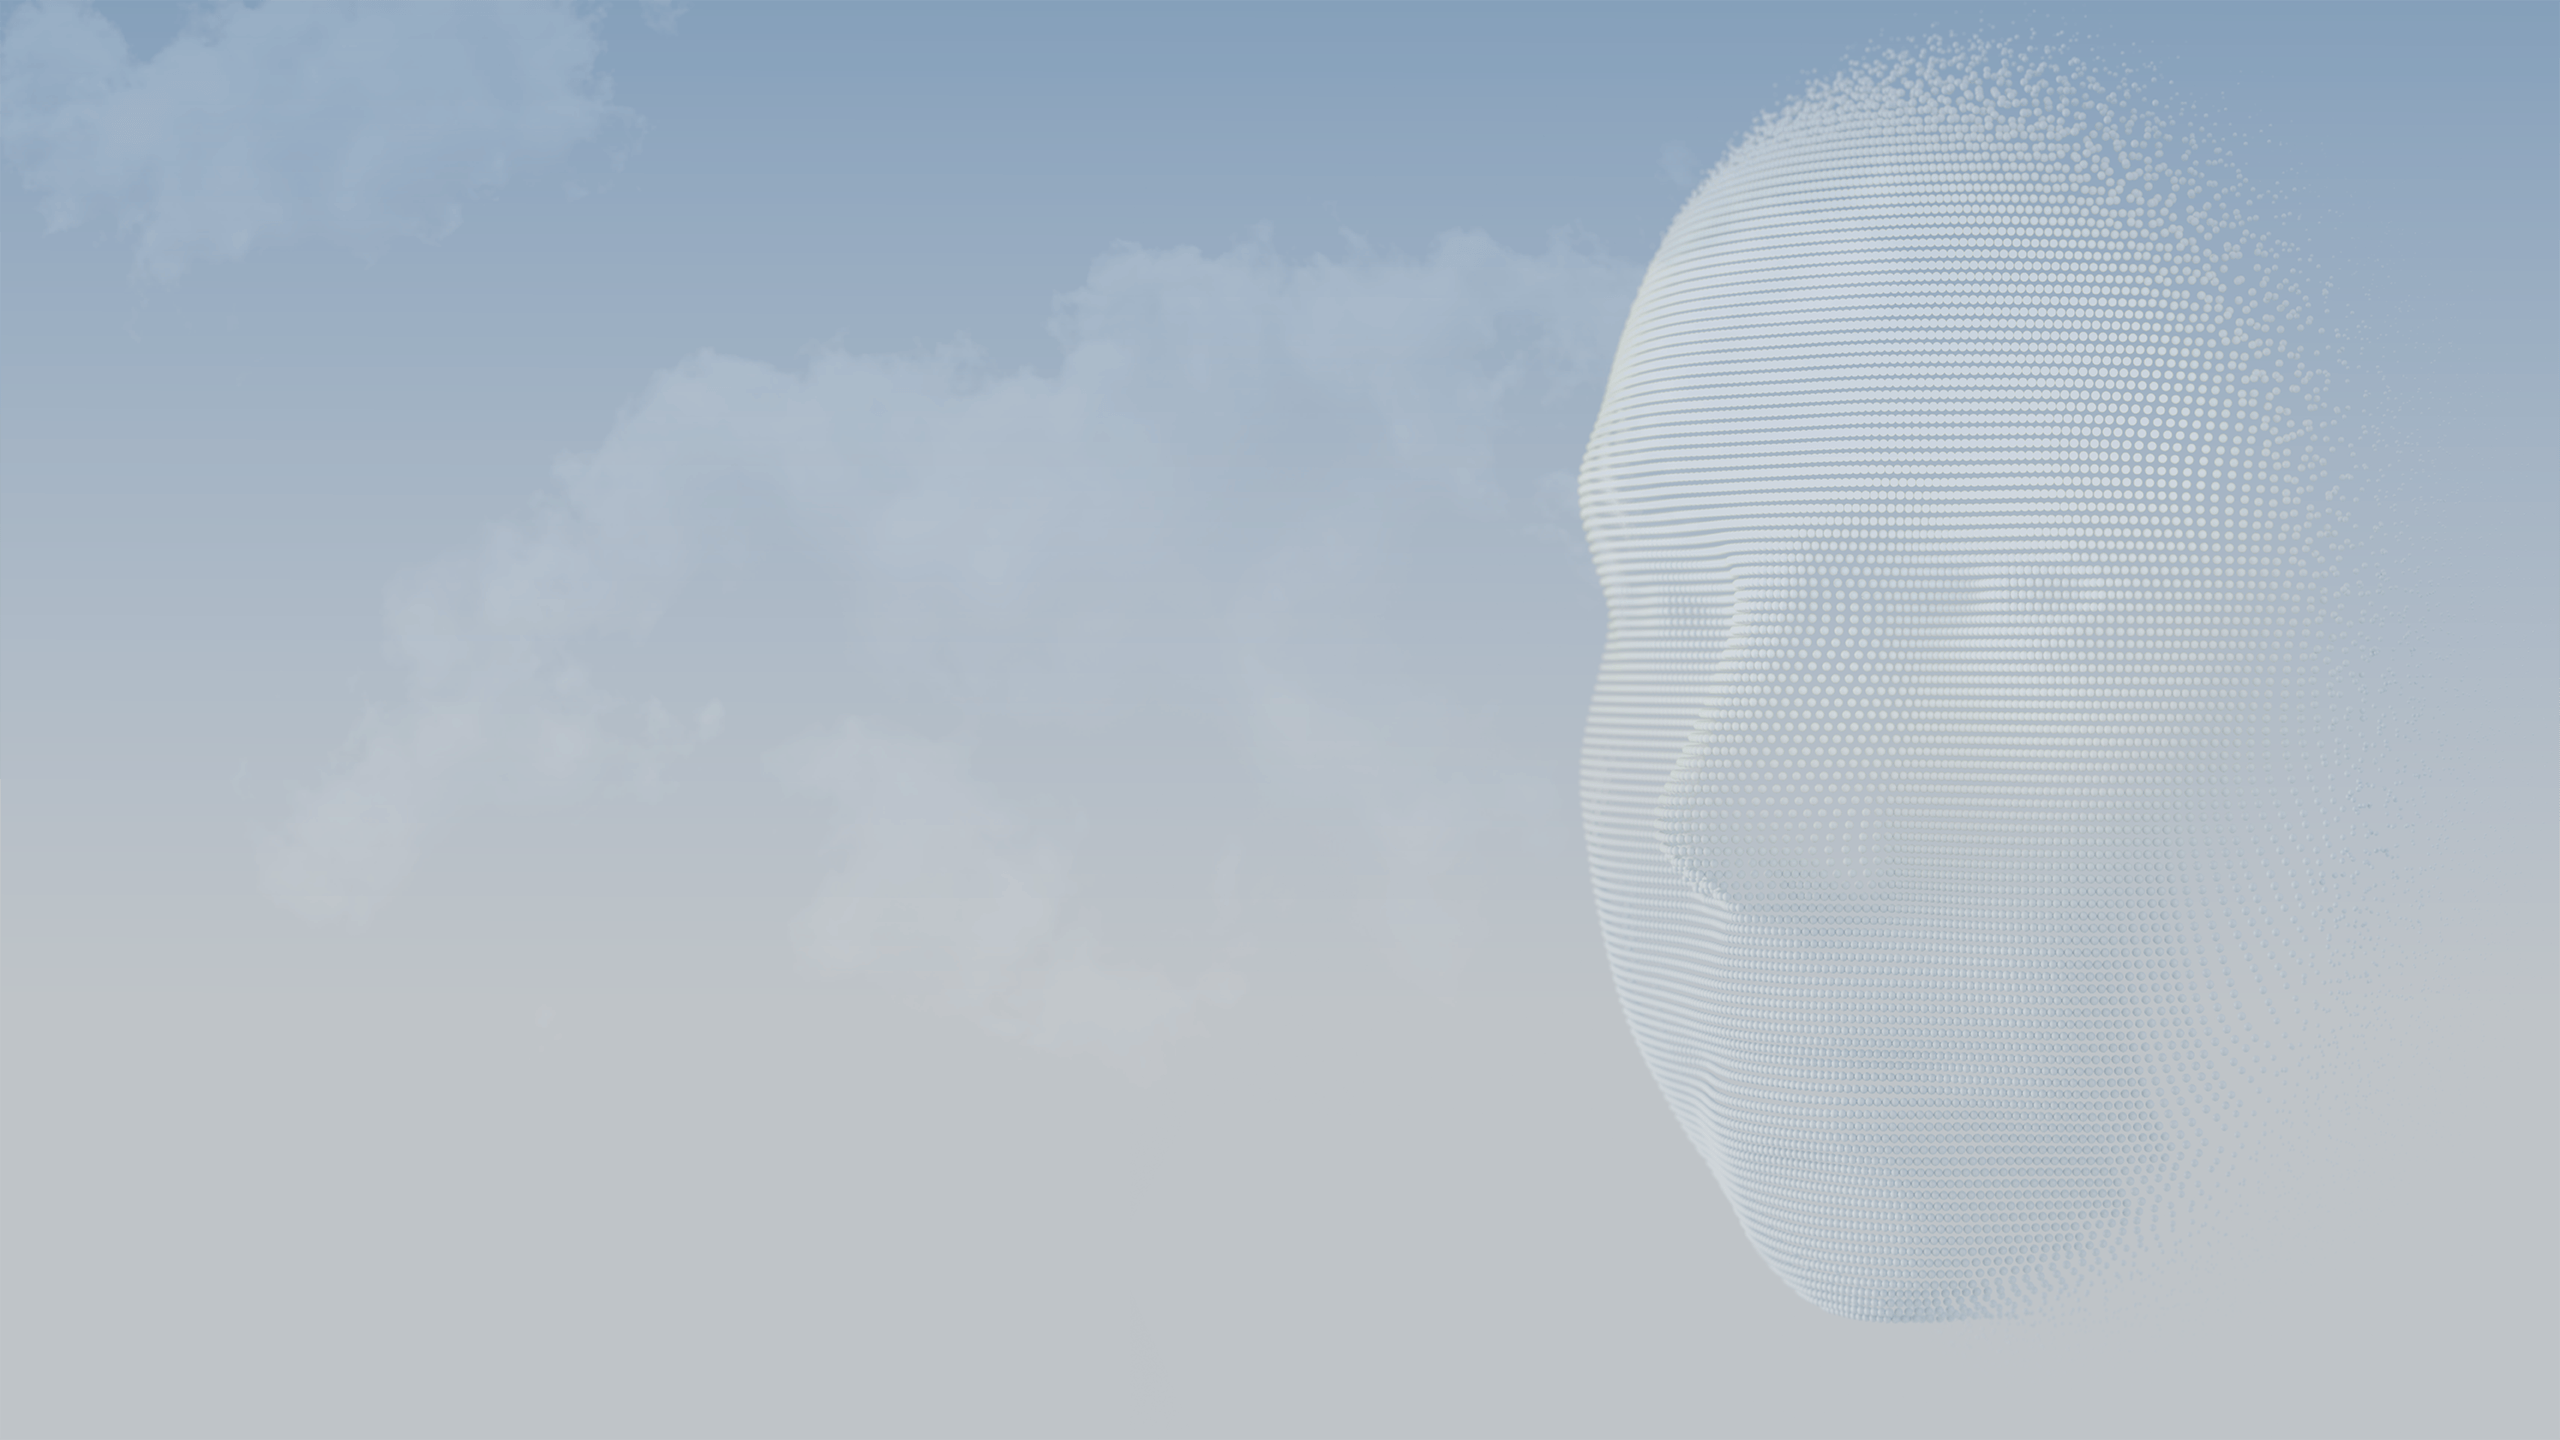 Animazione 3D di sfere che formano il volto di una persona sullo sfondo di un cielo azzurro.